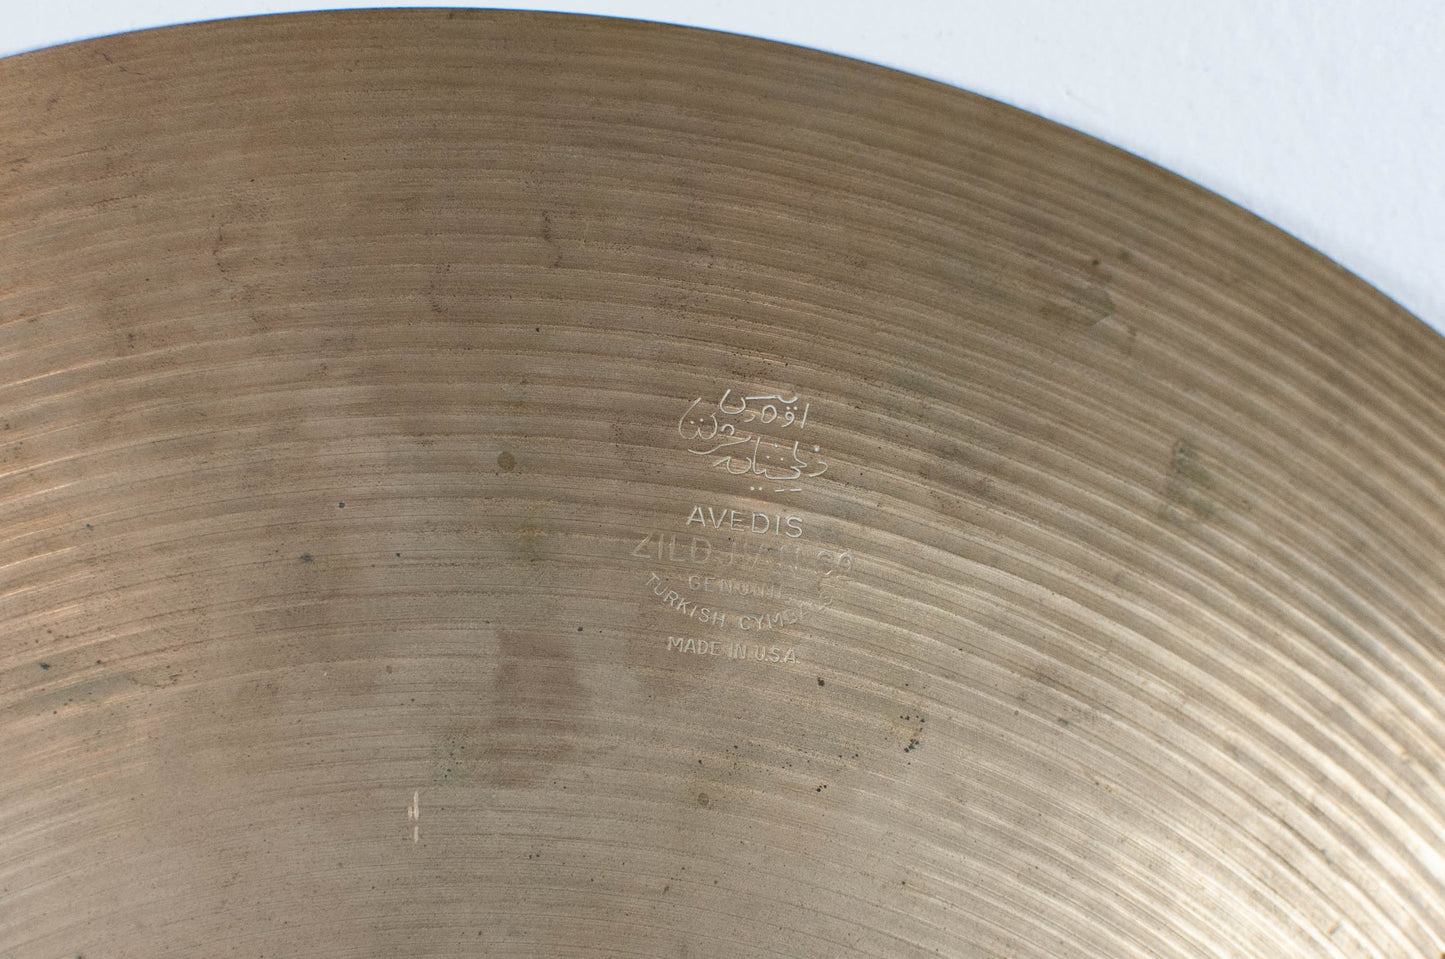 1960s Zildjian A 18" Crash Cymbal 1568g